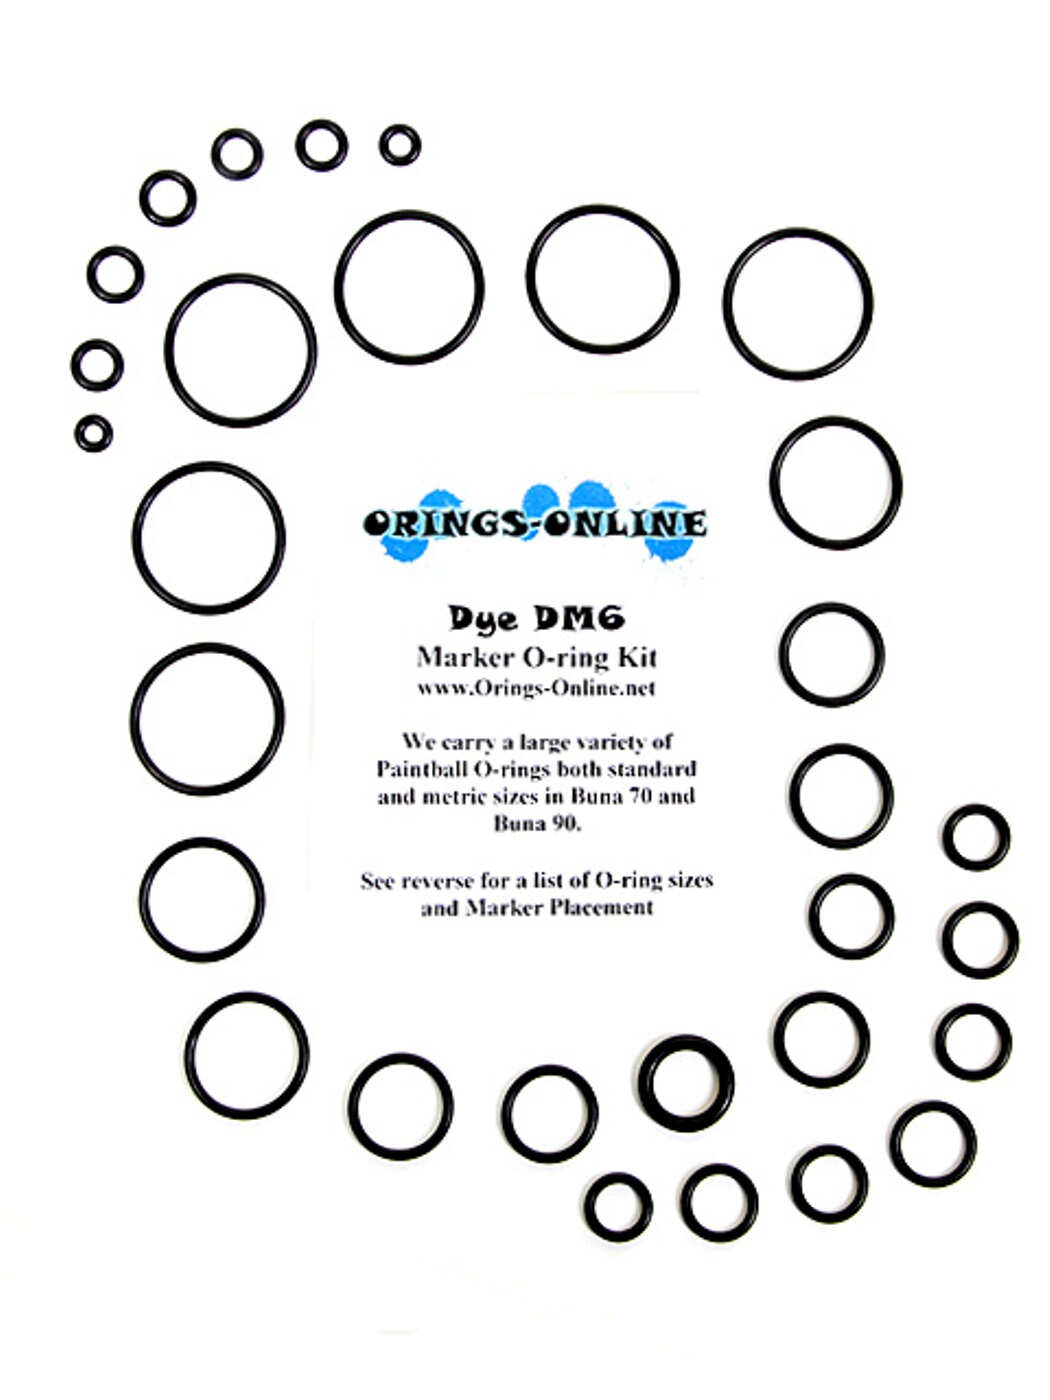 kits Dye DM5 Paintball Marker O-ring Oring Kit x 4 rebuilds 